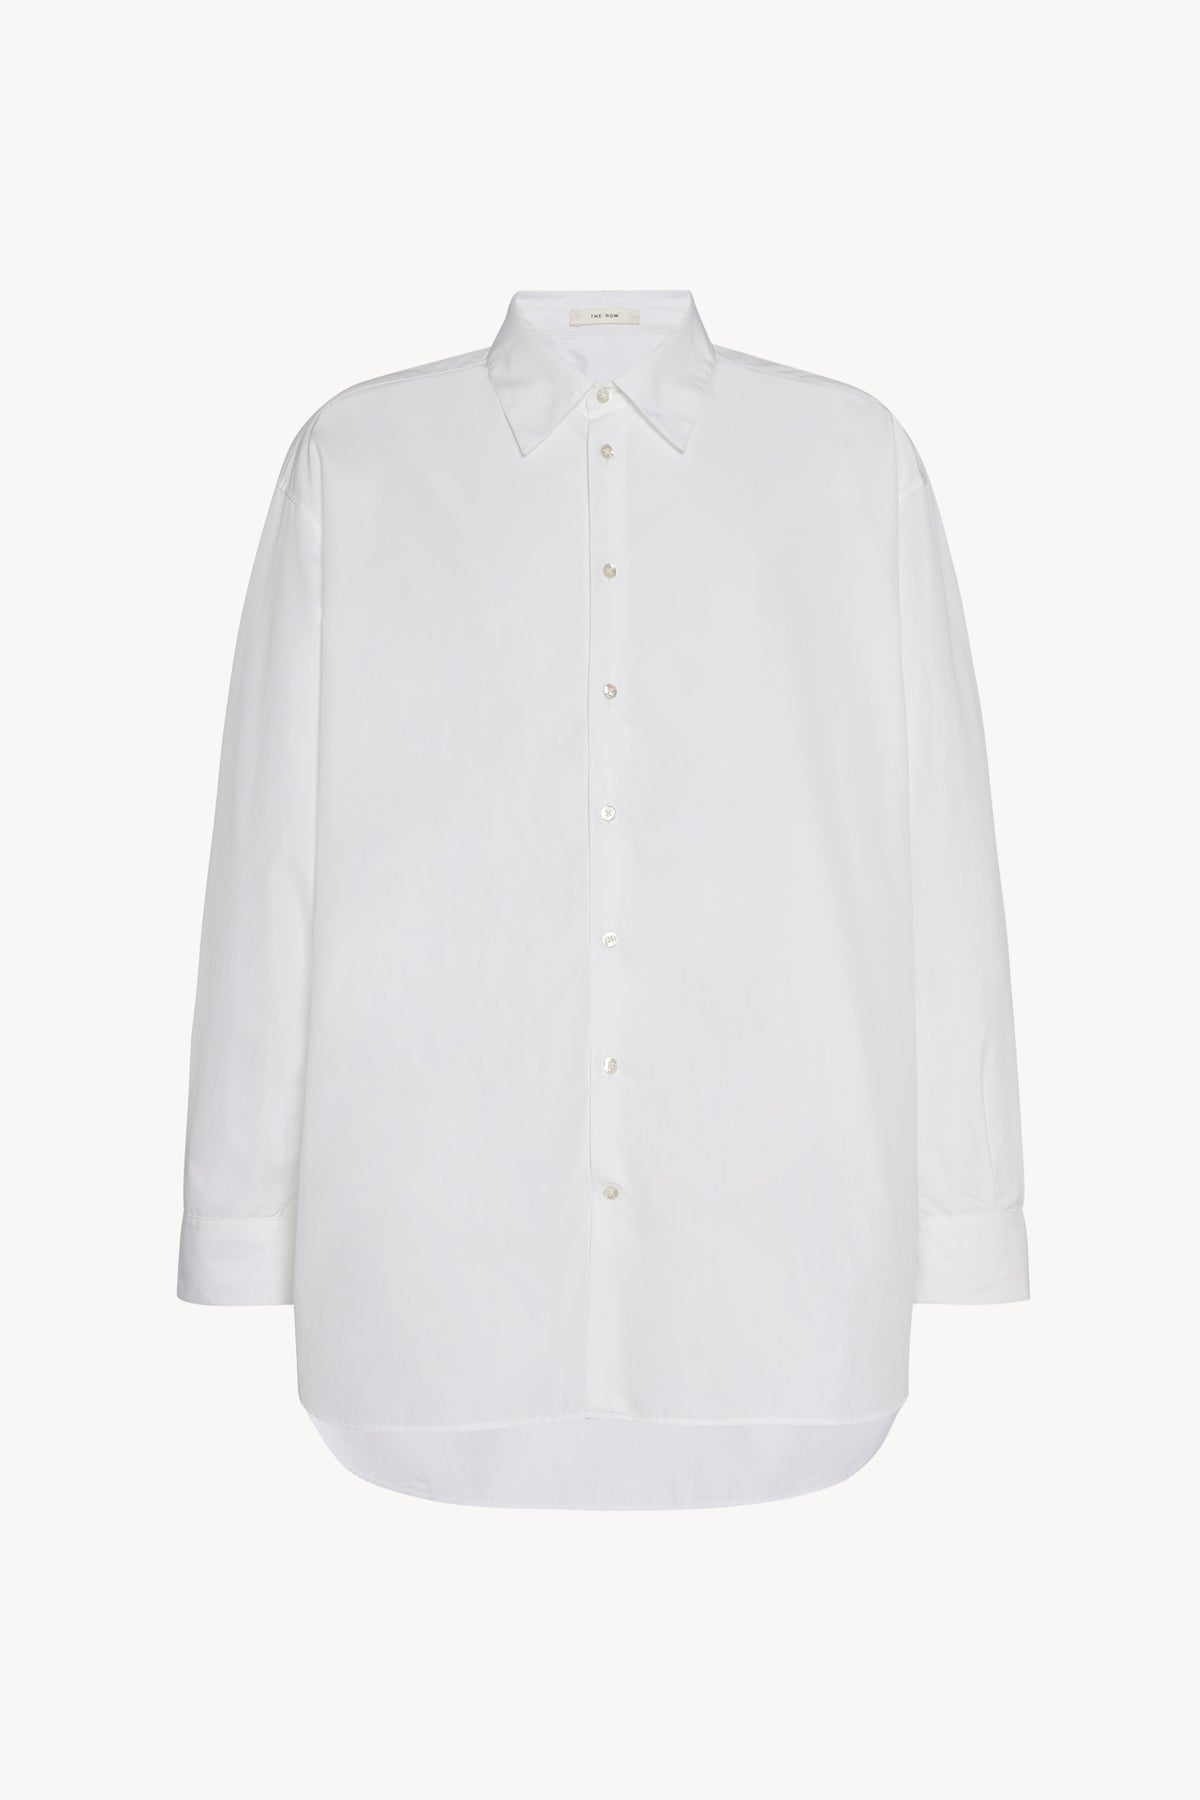 White shirts, Pure cotton shirts